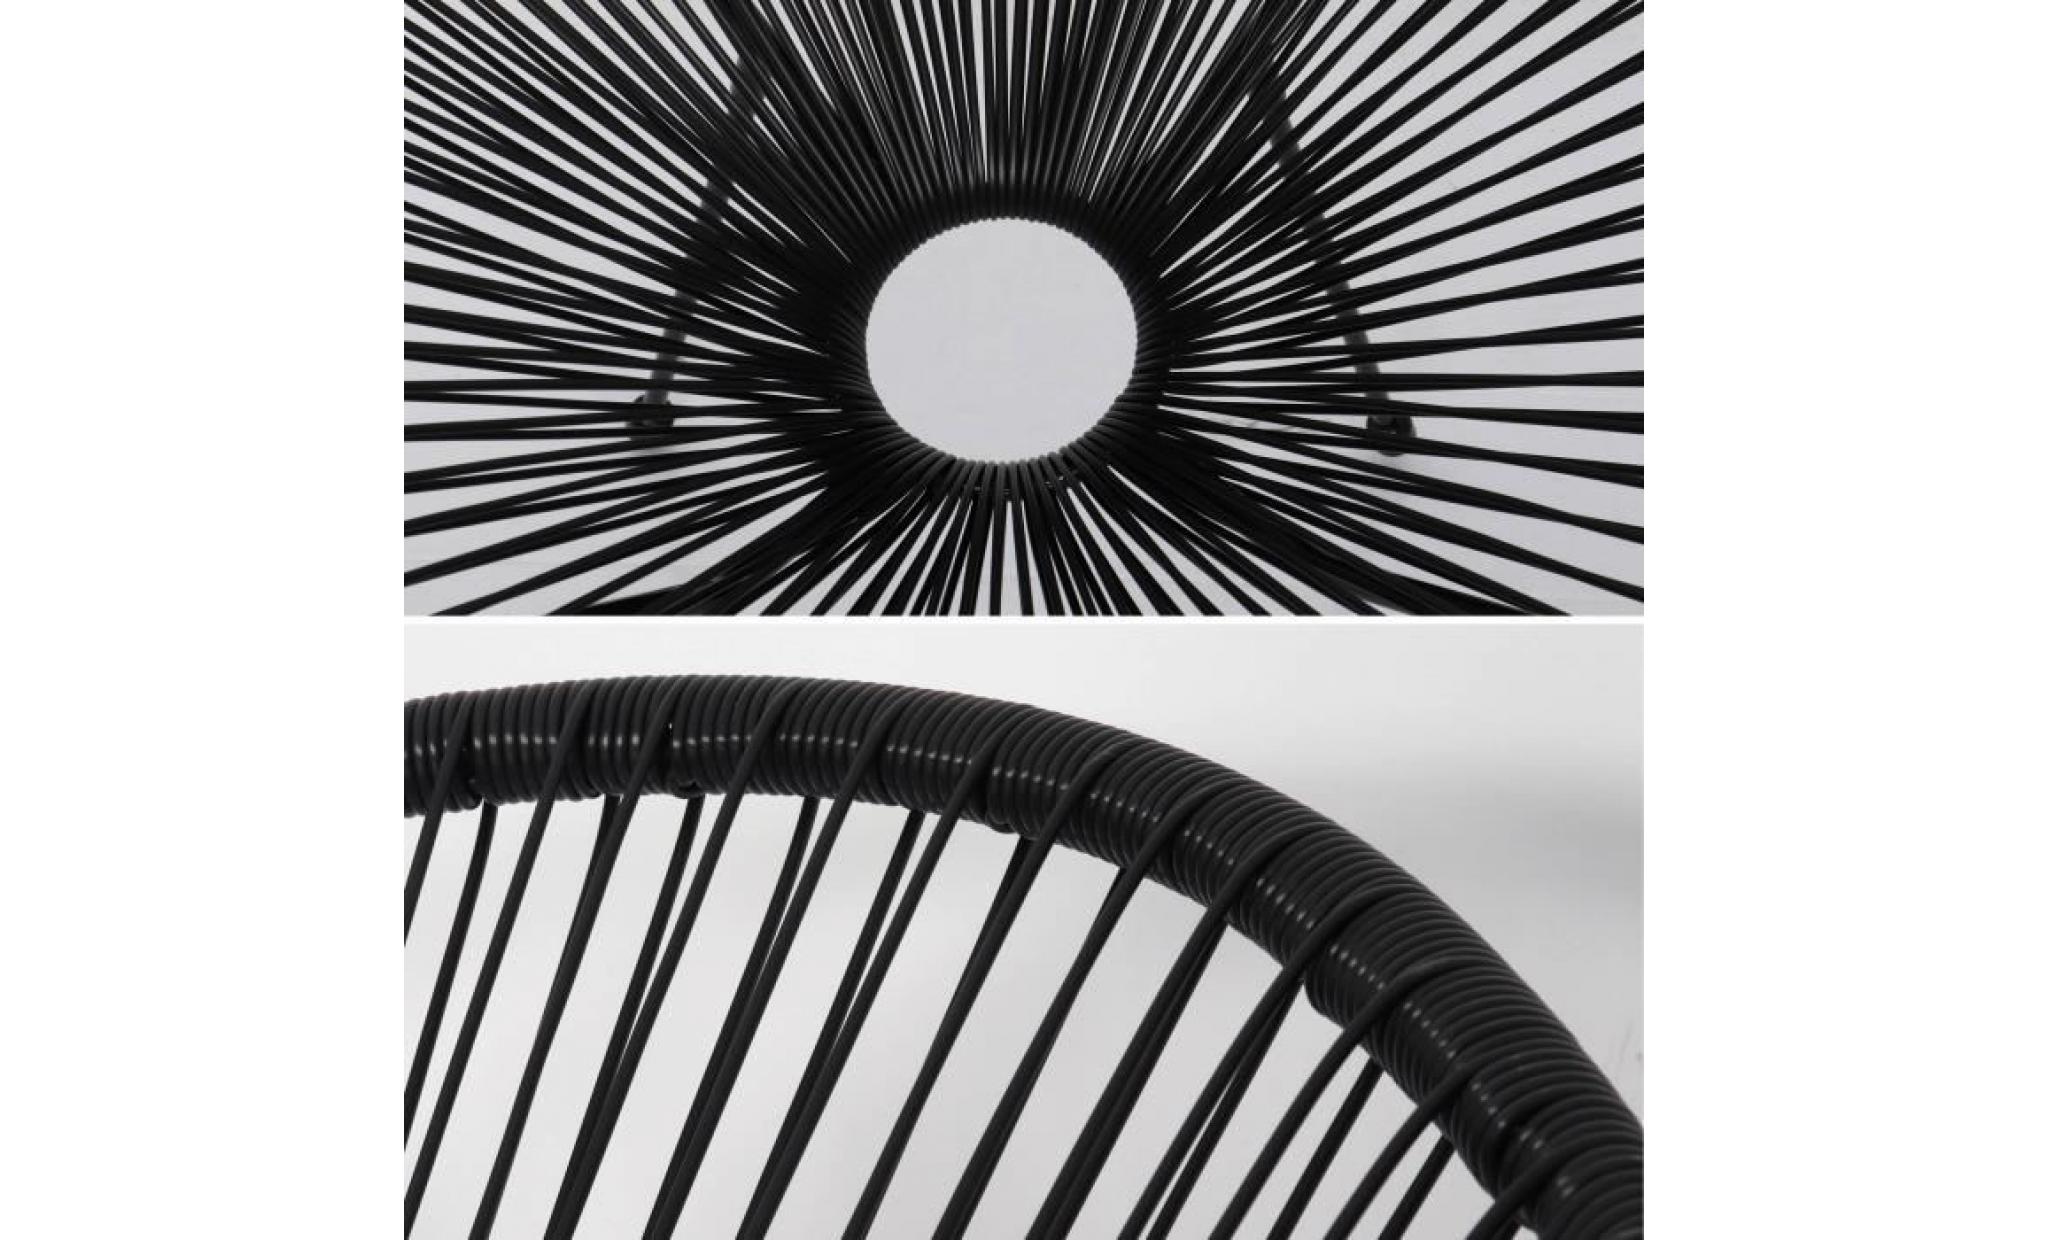 lot de 2 fauteuils design oeuf   acapulco noir   fauteuils 4 pieds design rétro, cordage plastique, intérieur / extérieur pas cher